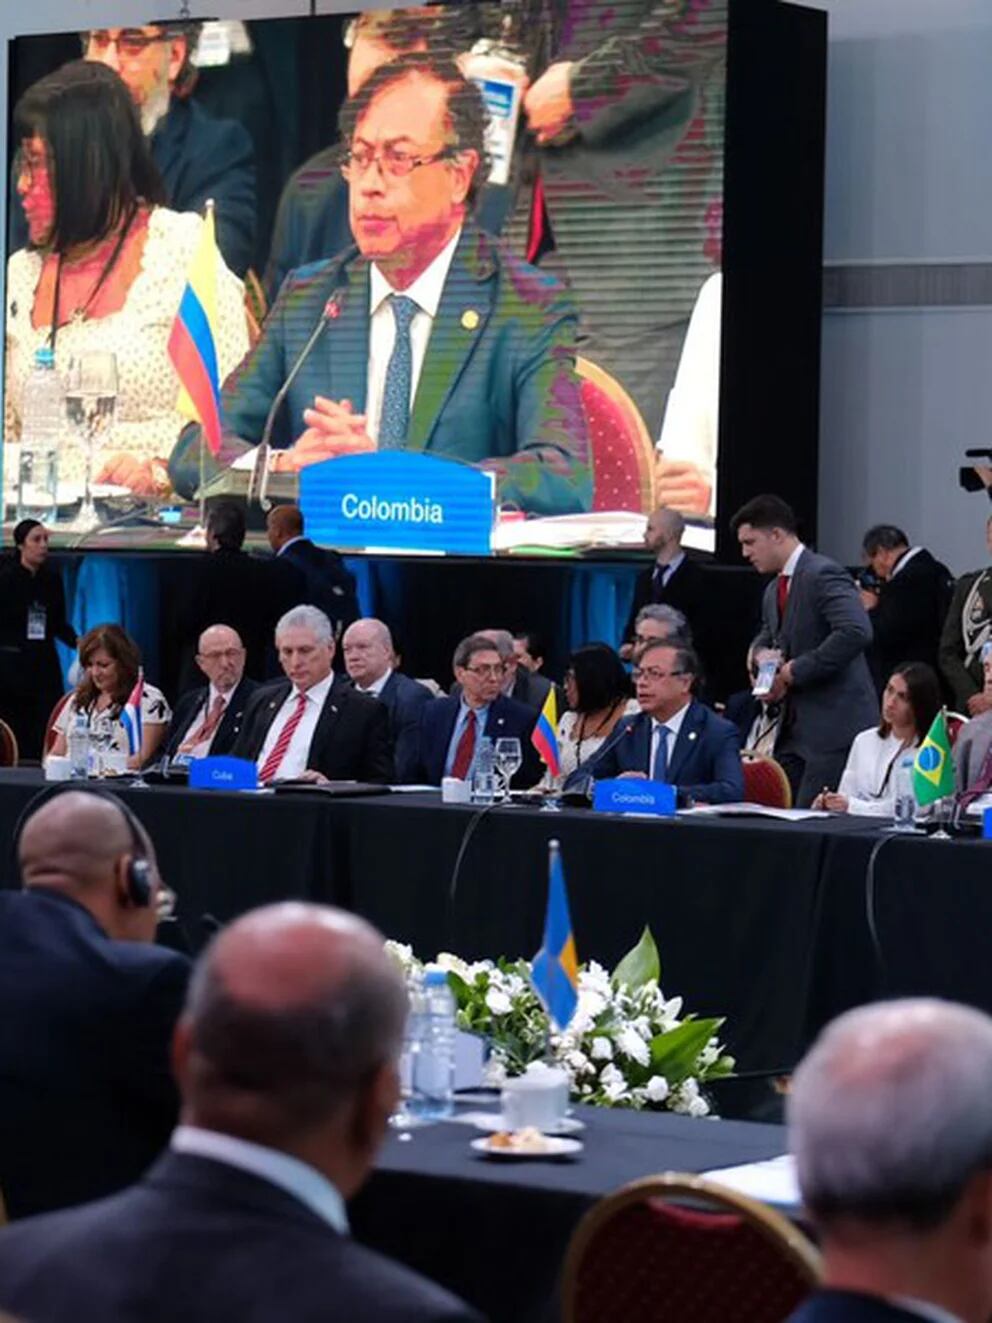 Colombia recibirá a la próxima cumbre de la Celac en 2025: “Es un reconocimiento a Gustavo Petro” - Infobae